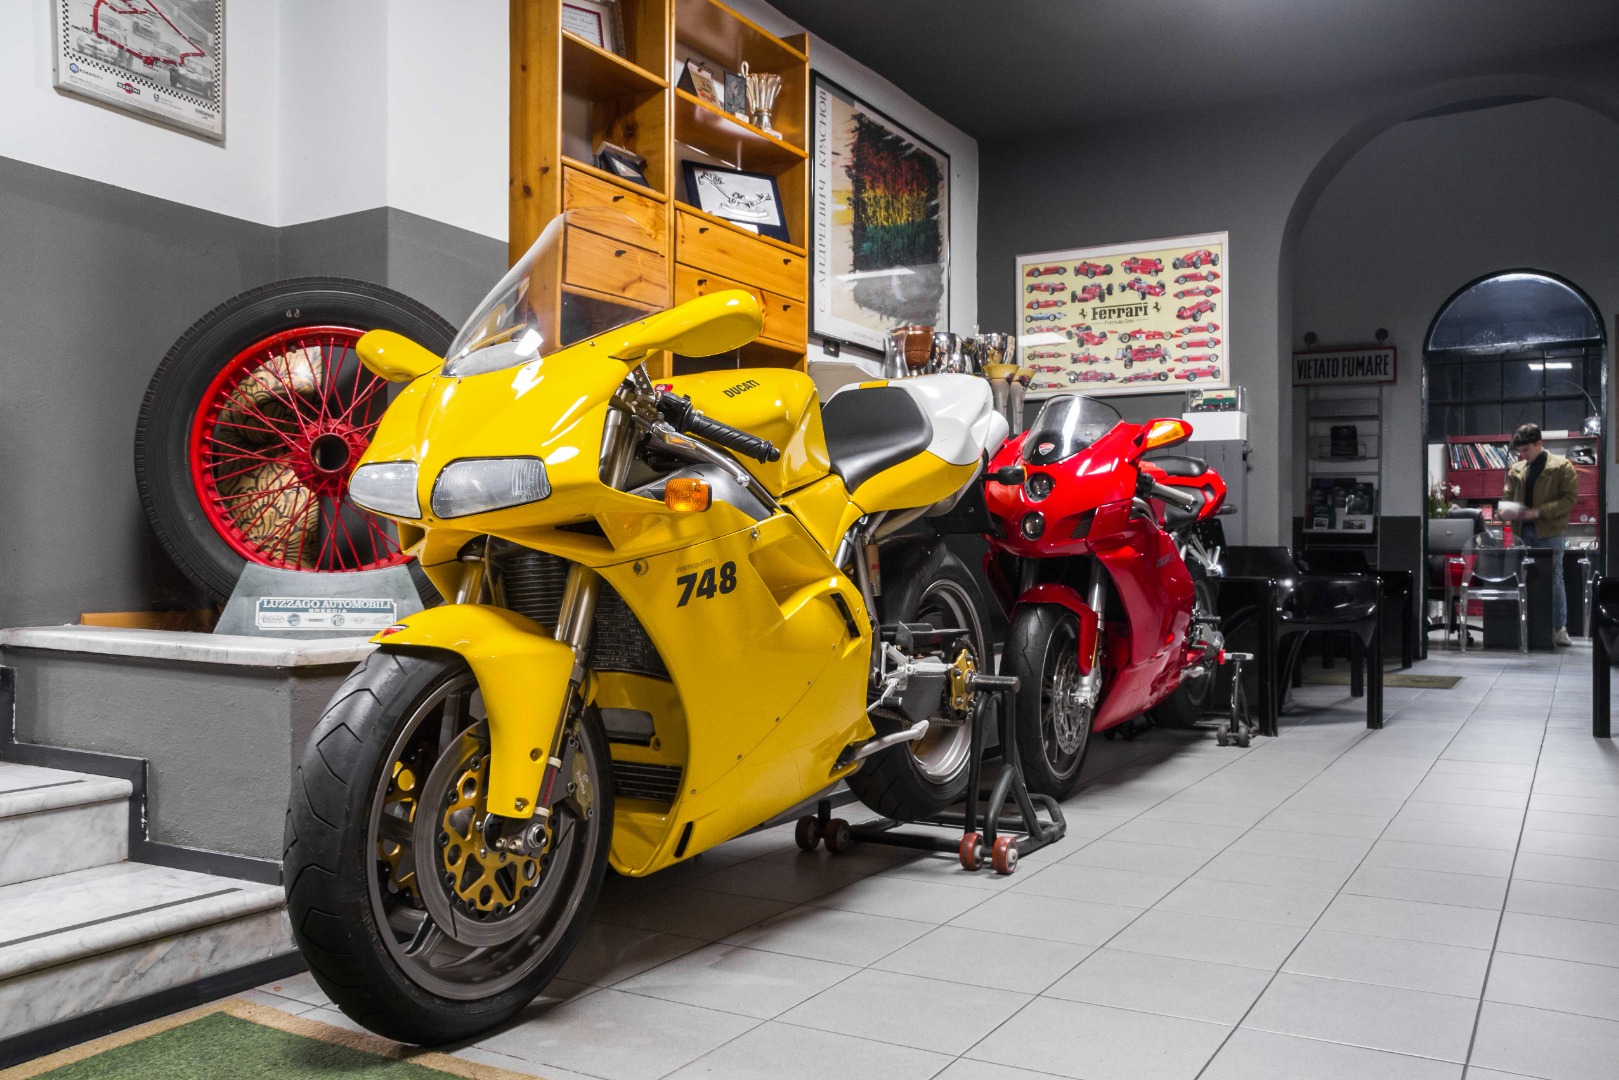 Esposizione moto Ducati